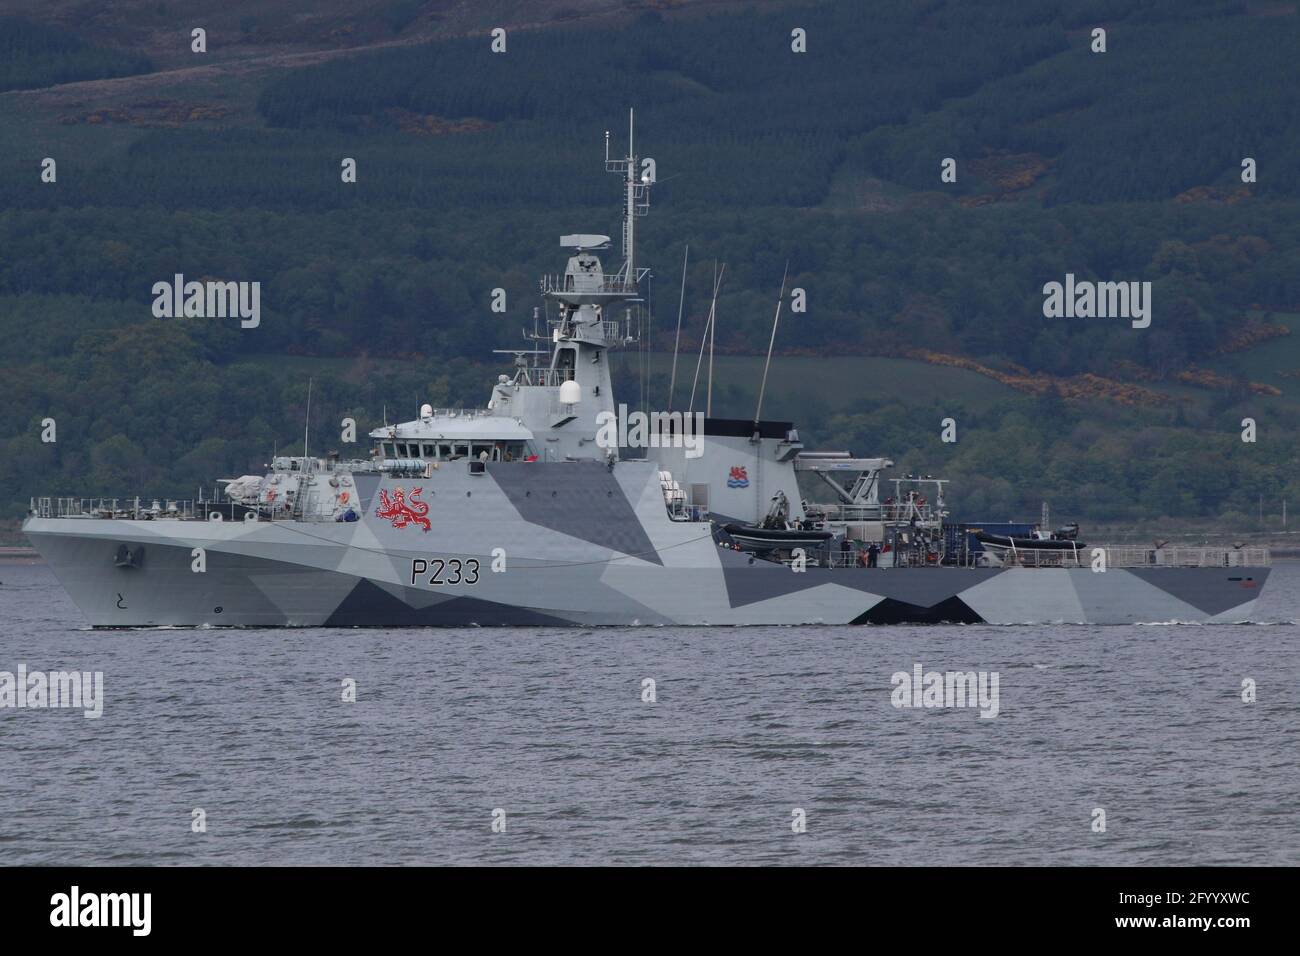 HMS Tamar (P233), un navire de patrouille de la classe du Lot 2 exploité par la Marine royale, dans son schéma de camouflage éblouissant récemment appliqué, au large de Greenock sur le Firth de Clyde. Banque D'Images